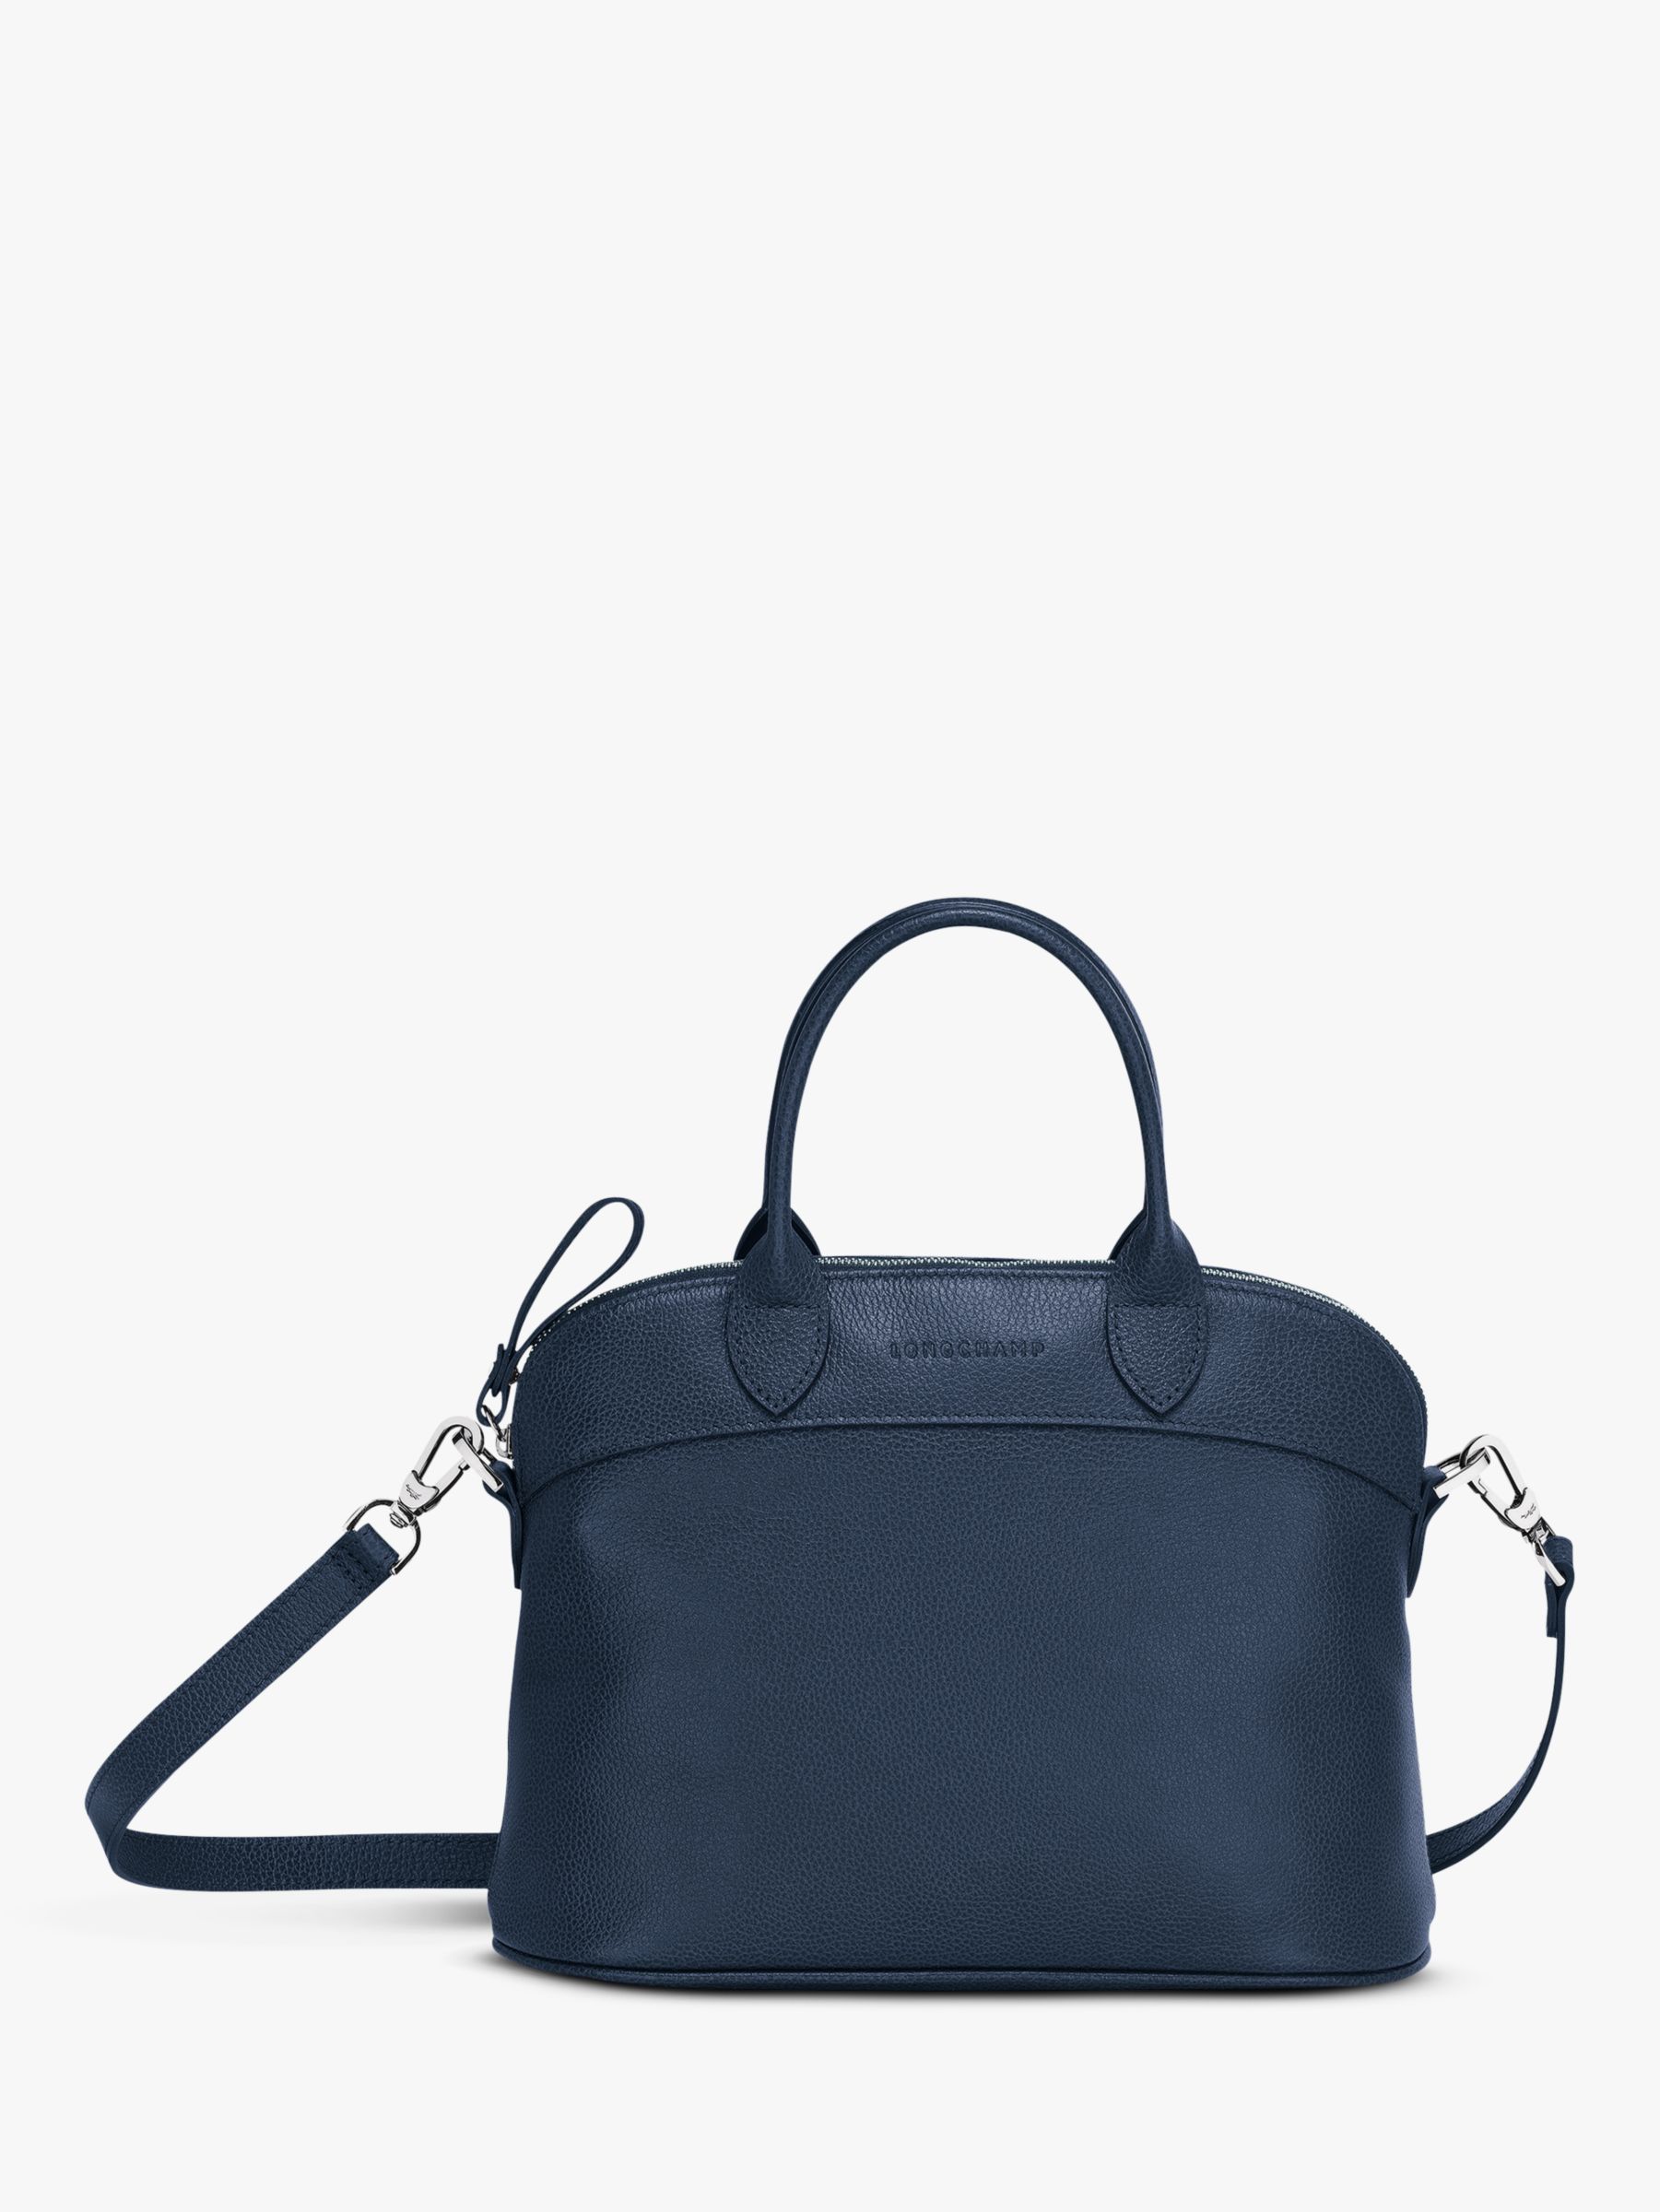 Longchamp Le Foulonné Leather Top Handle Bag at John Lewis & Partners